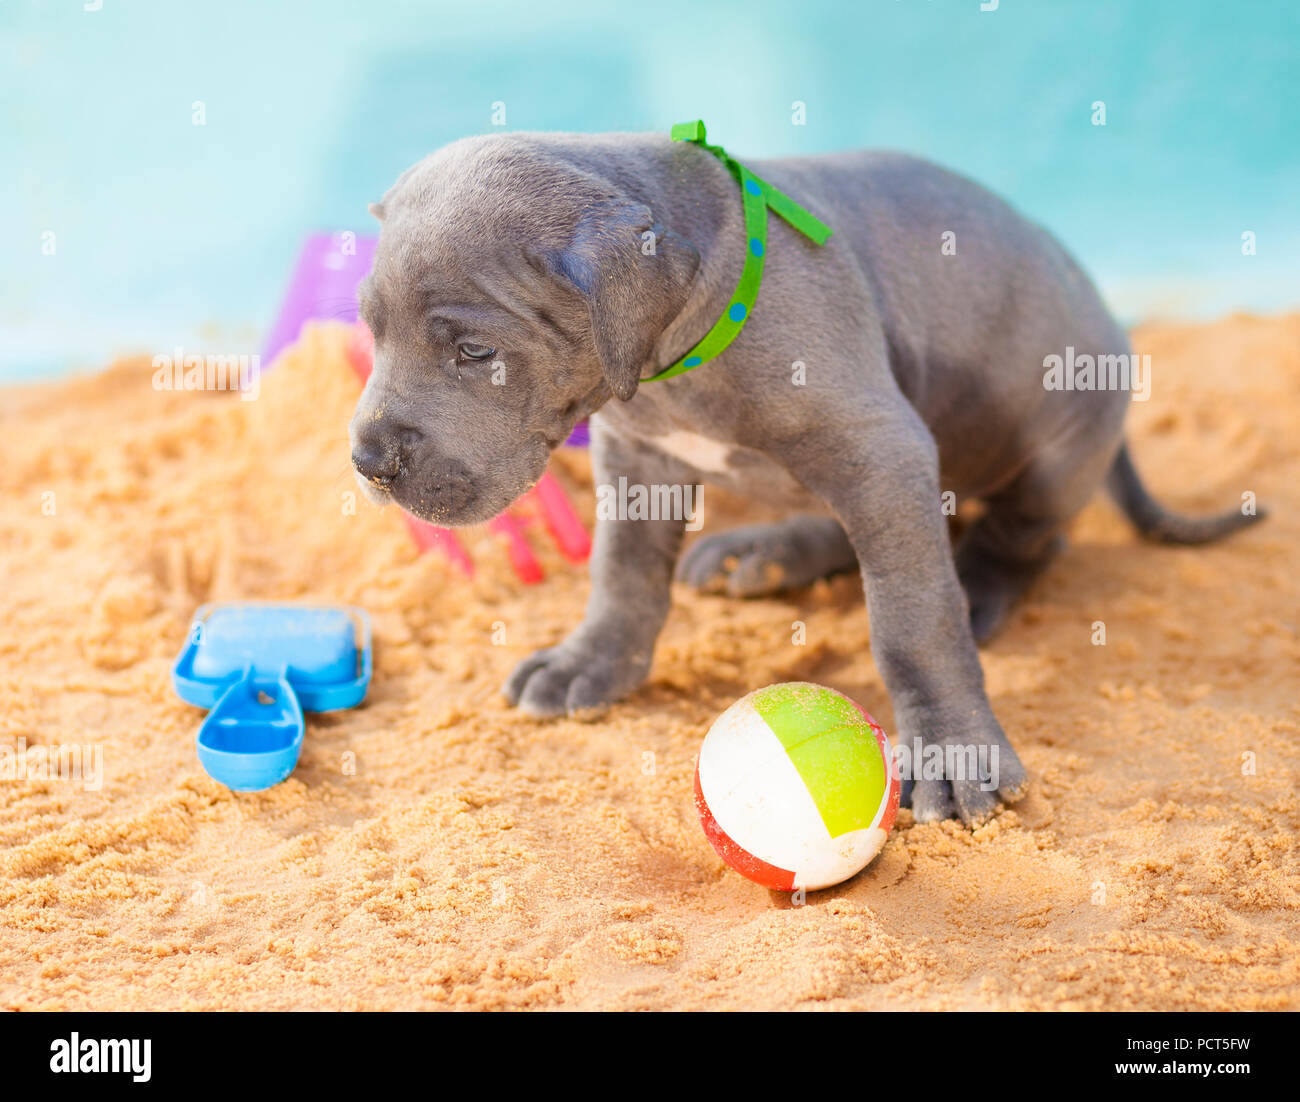 Alano cucciolo con la sua testa appesa a bassa sulla sabbia Foto Stock